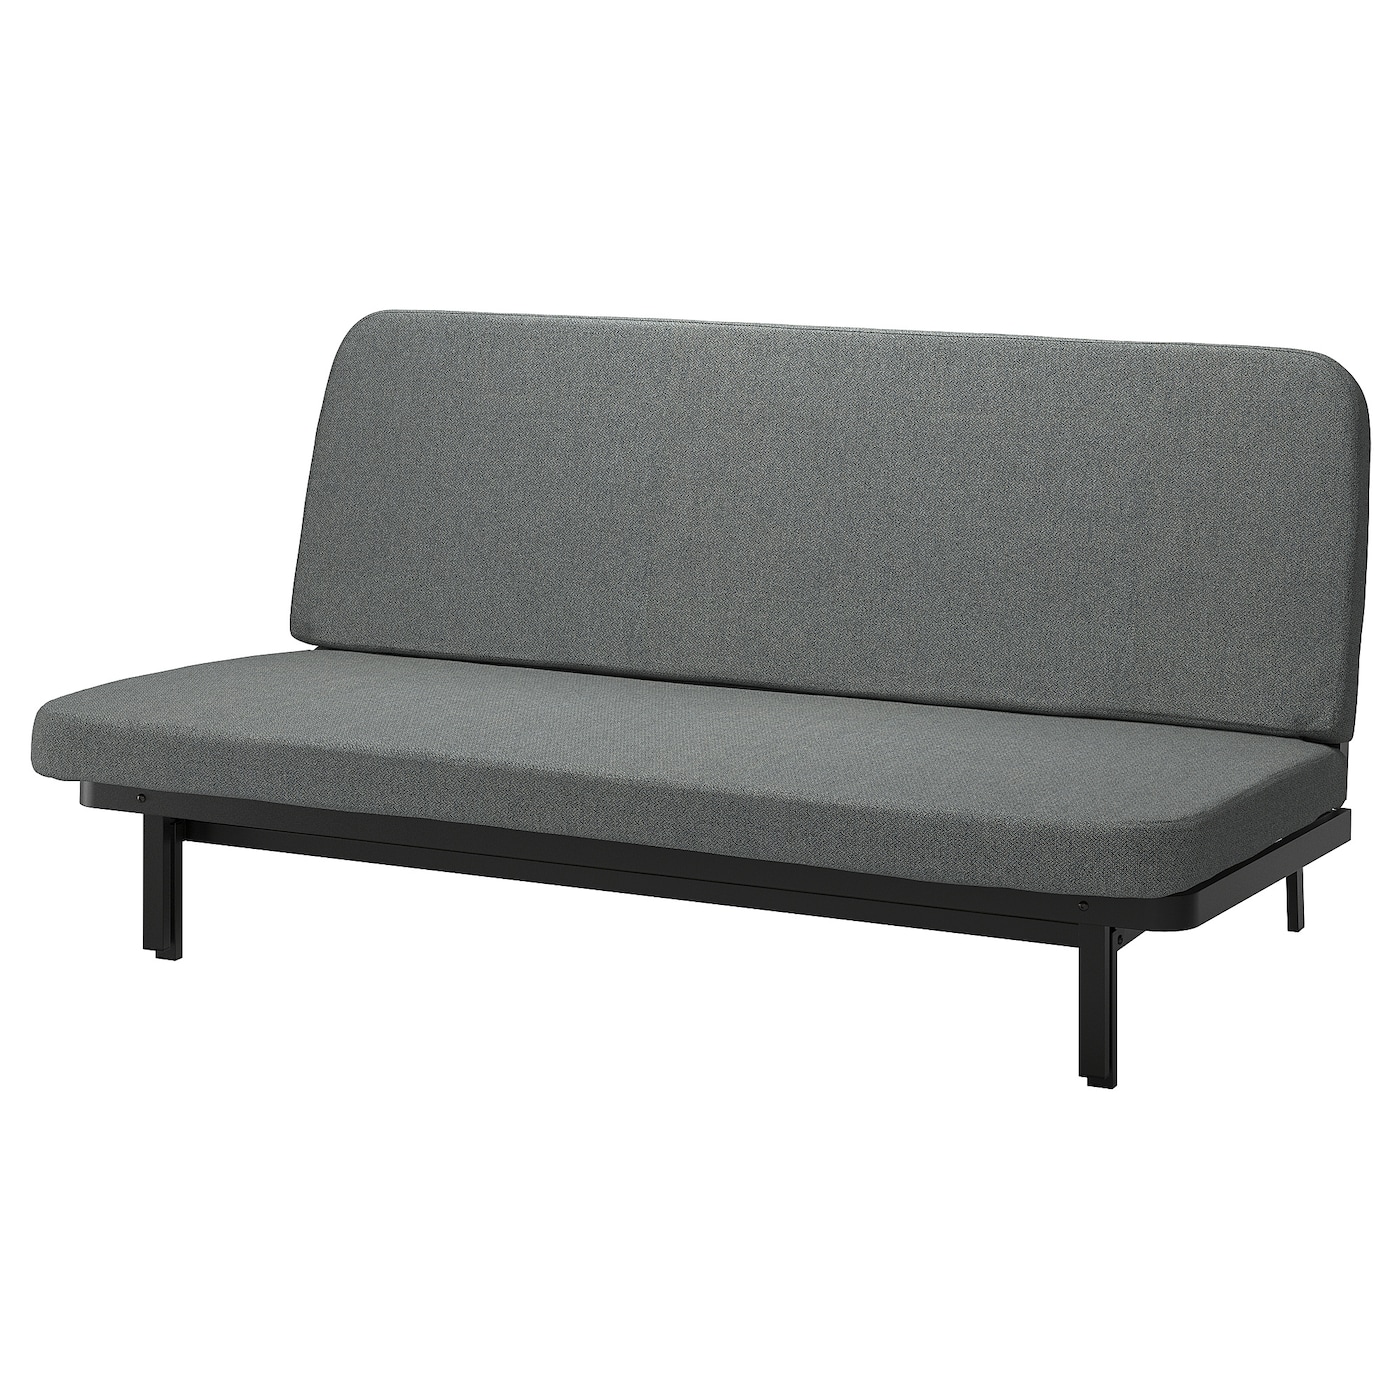 диван кровать шарм дизайн бит 2 серый кровать NYHAMN 3-местный диван-кровать, в комплекте пружинный матрас/Скартофта черный/светло-серый IKEA